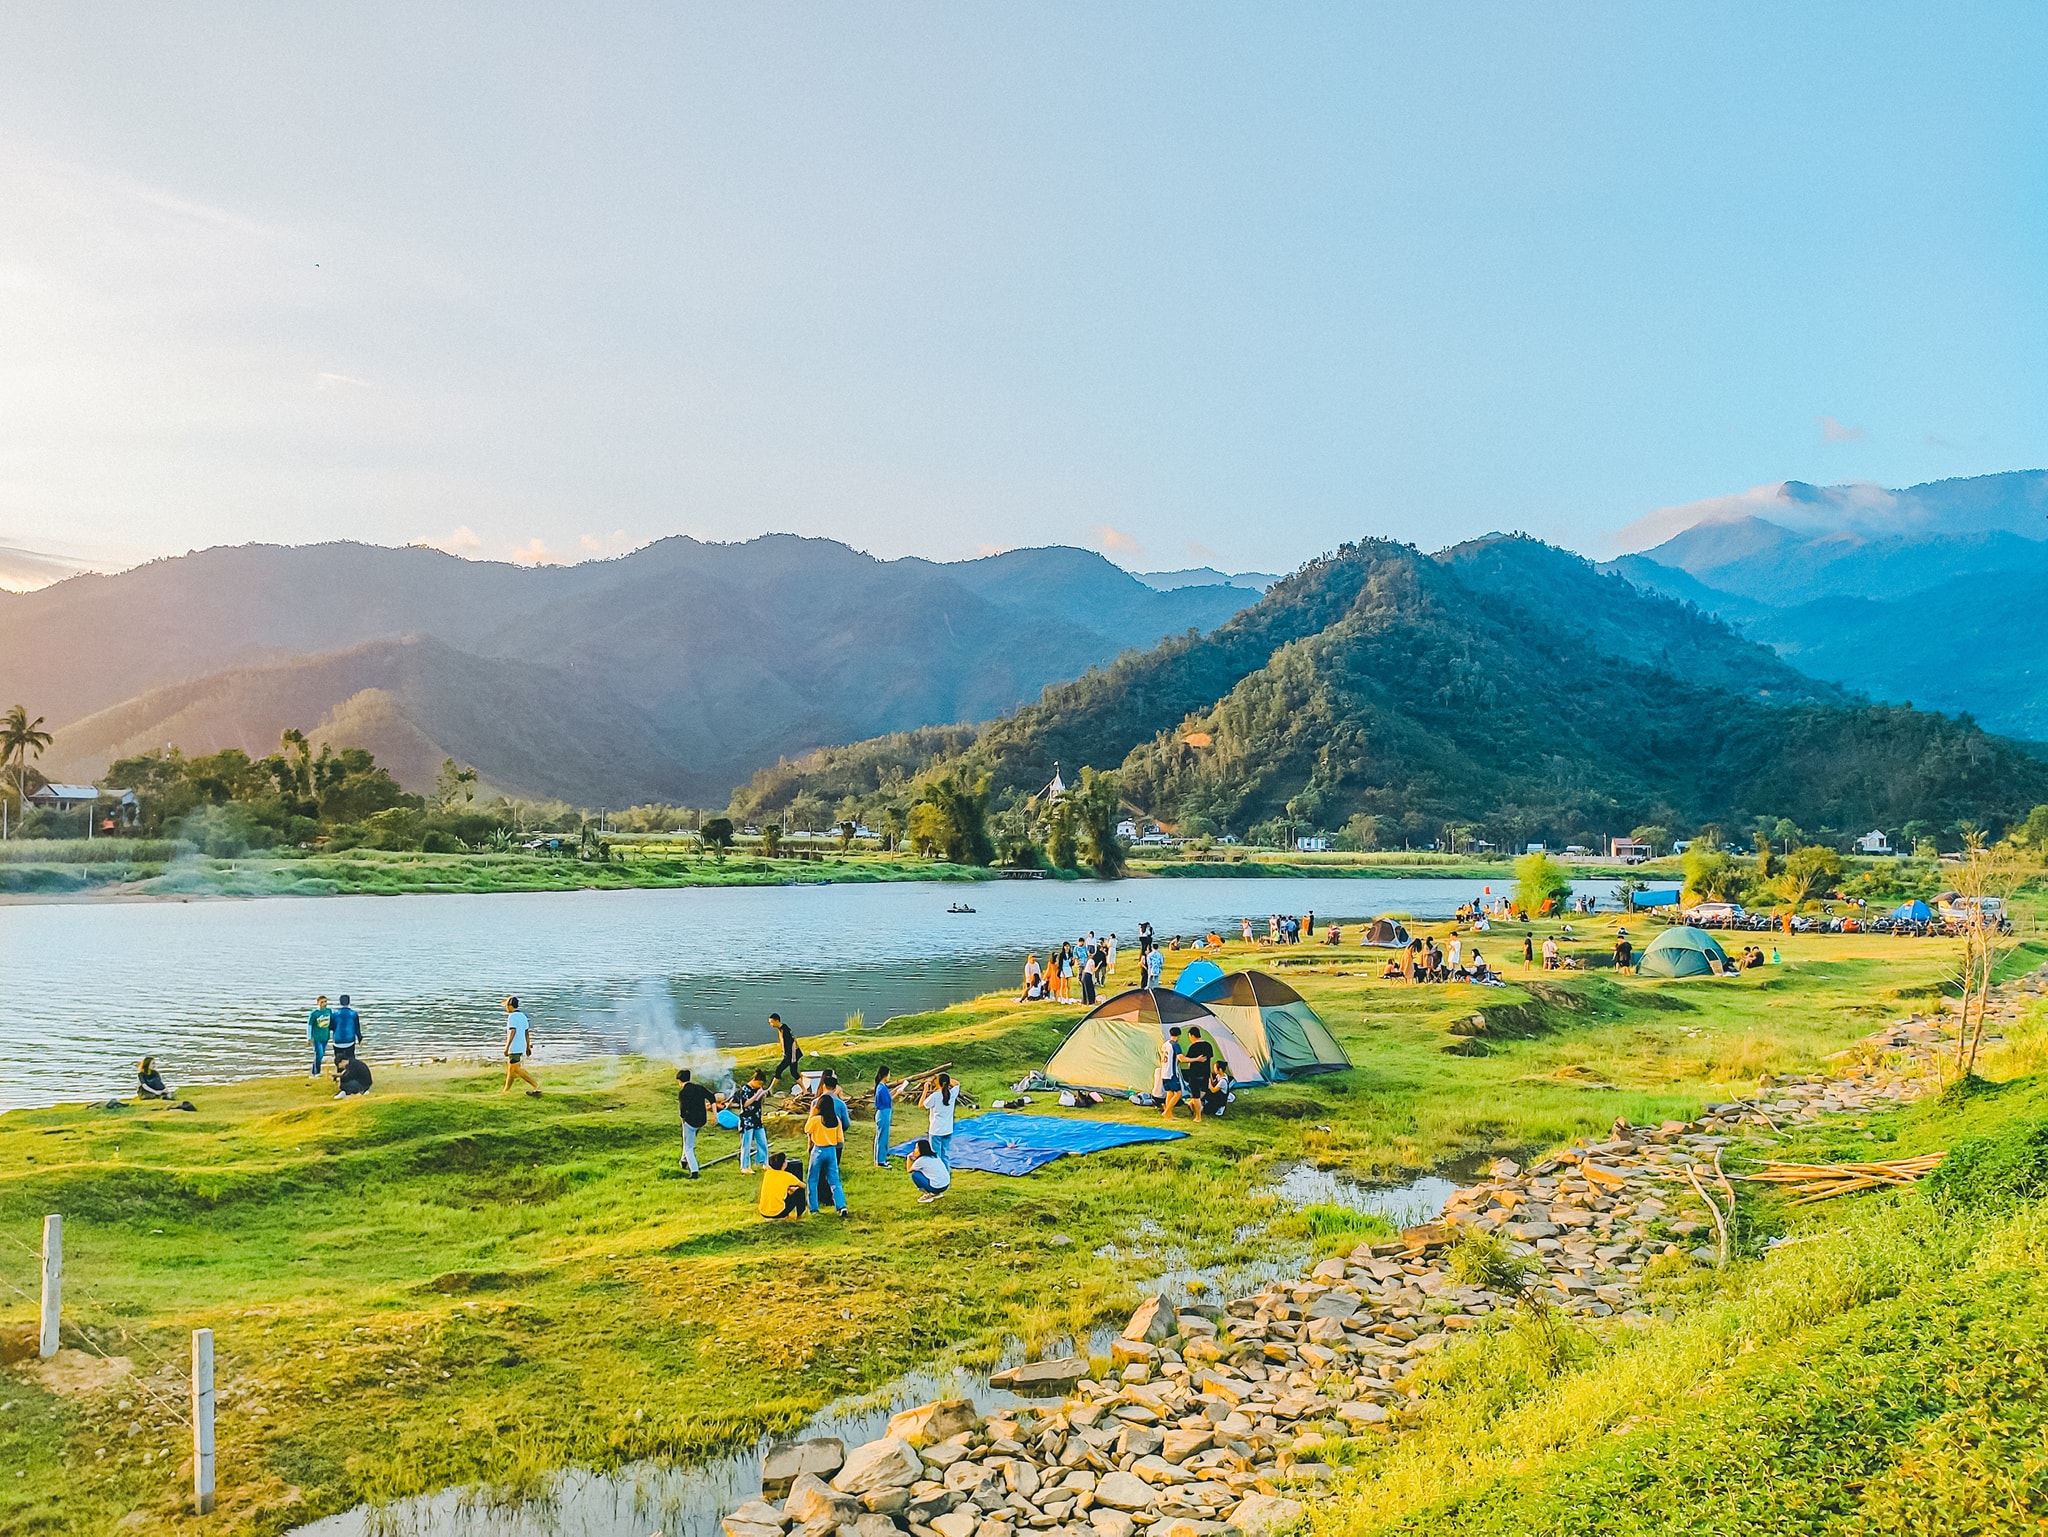 cắm trại ở đâu đẹp tại Đà Nẵng